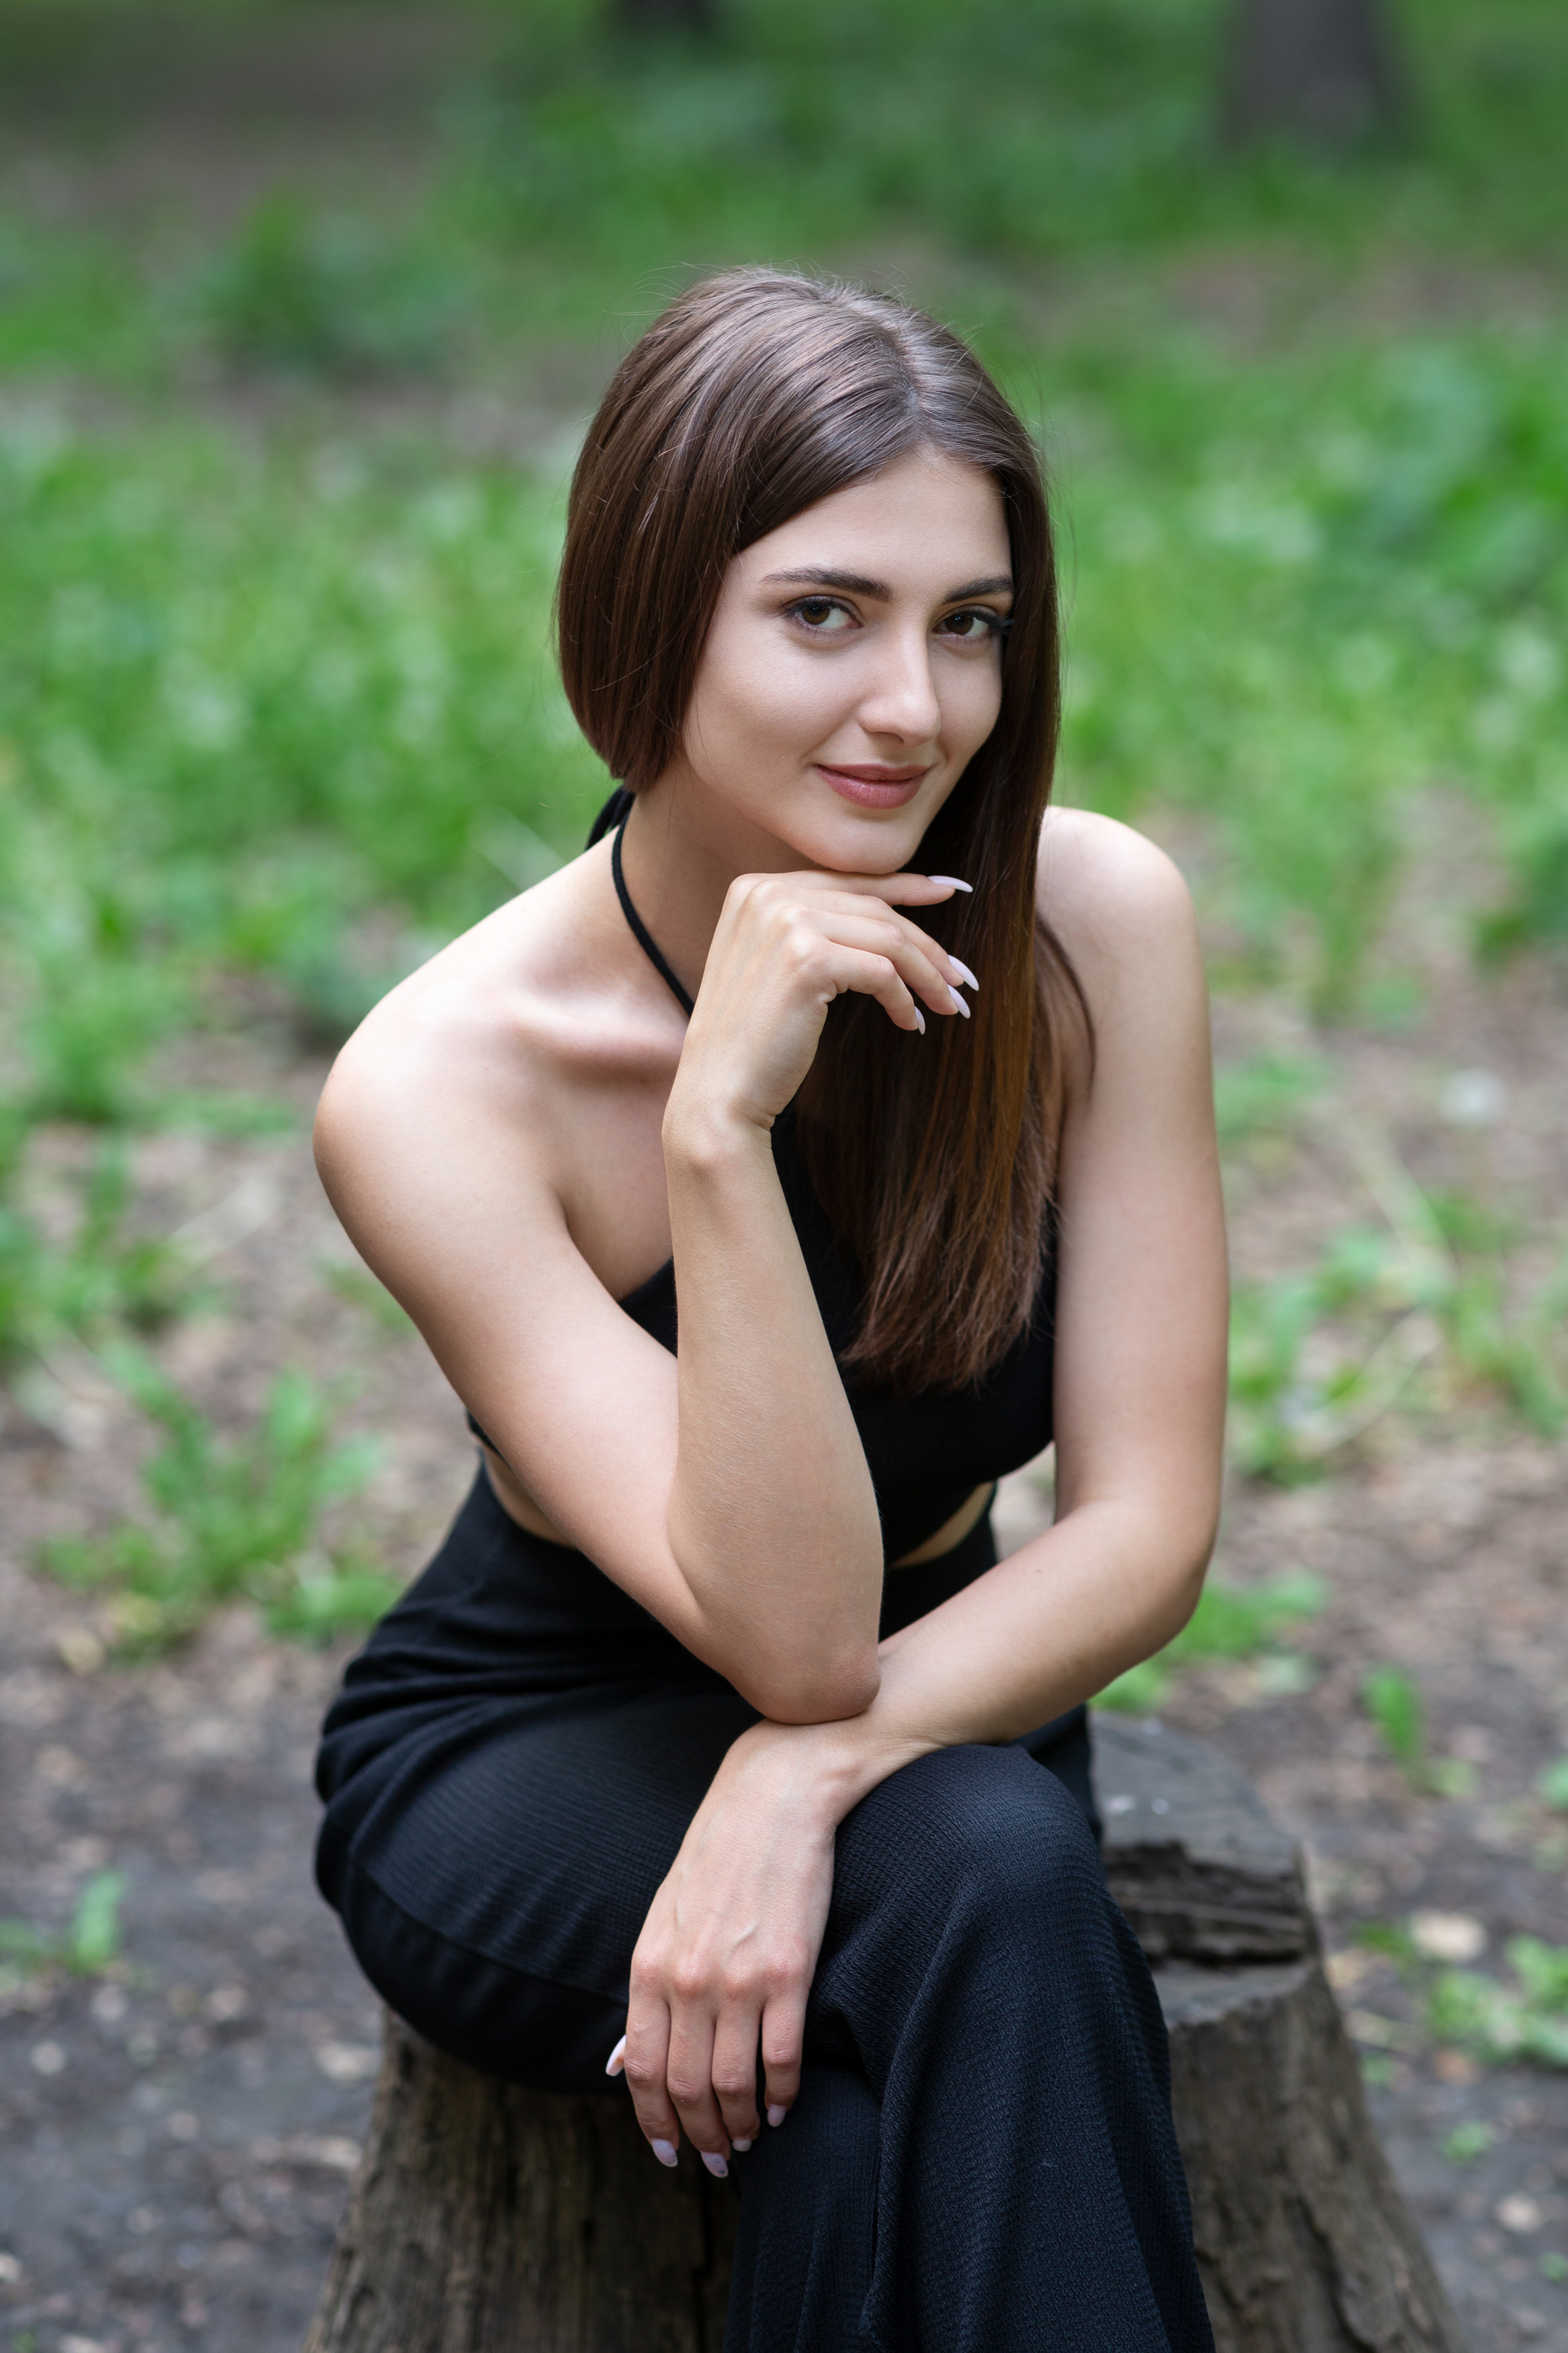 Murat Kuzhakhmetov Women Brunette Long Hair Smiling Black Clothing Legs Crossed Tree Stump 2333x3500